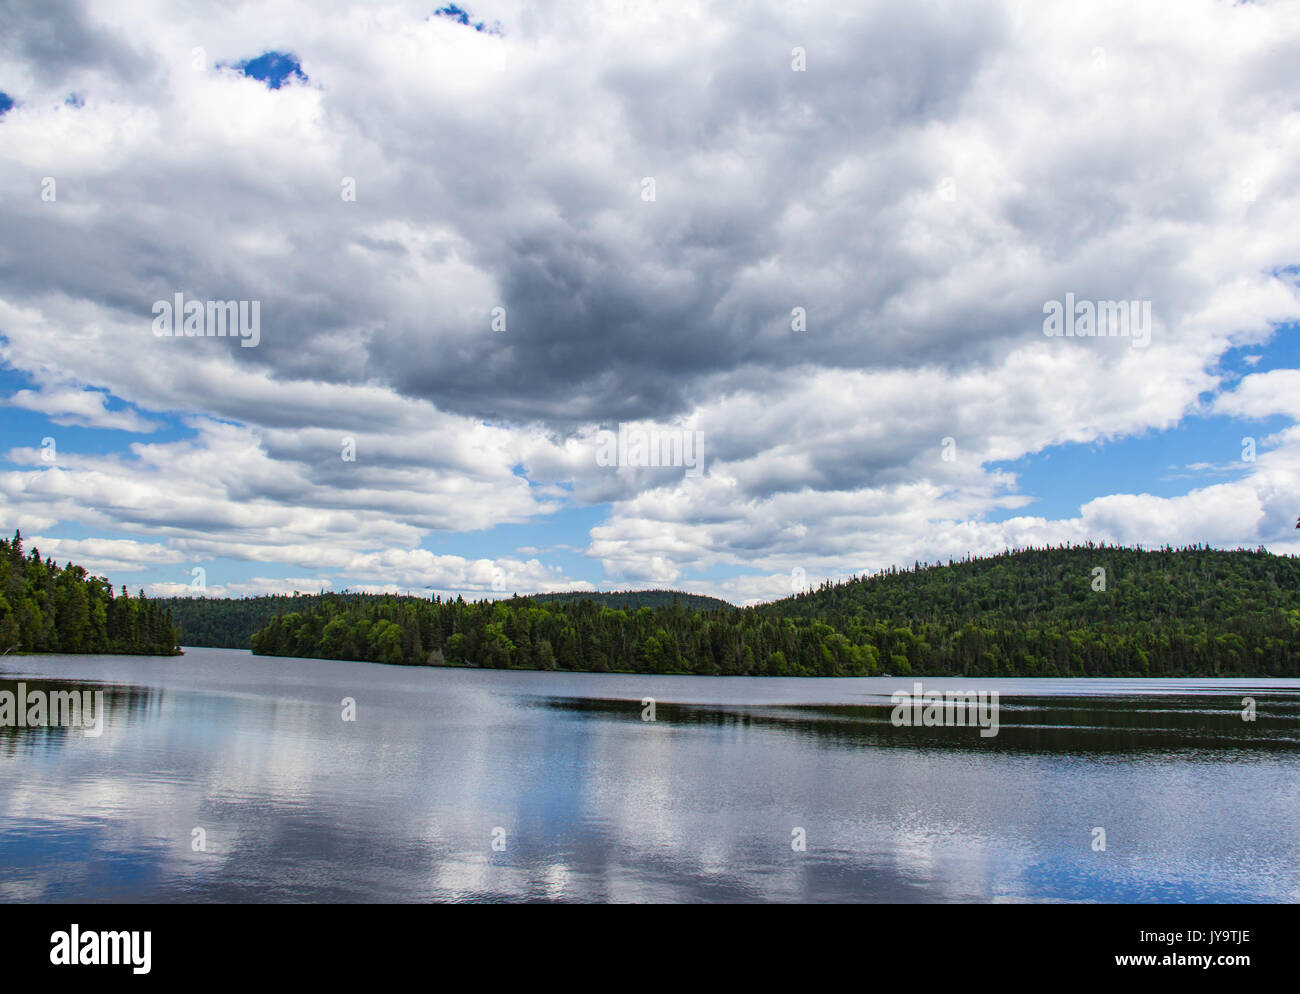 Malerischer Hintergrund mit bewölktem Himmel und Reflexion im Wasser, Naturfotografie Landschaft, Nord-Ontario, Kanada, Natural World Stockfoto